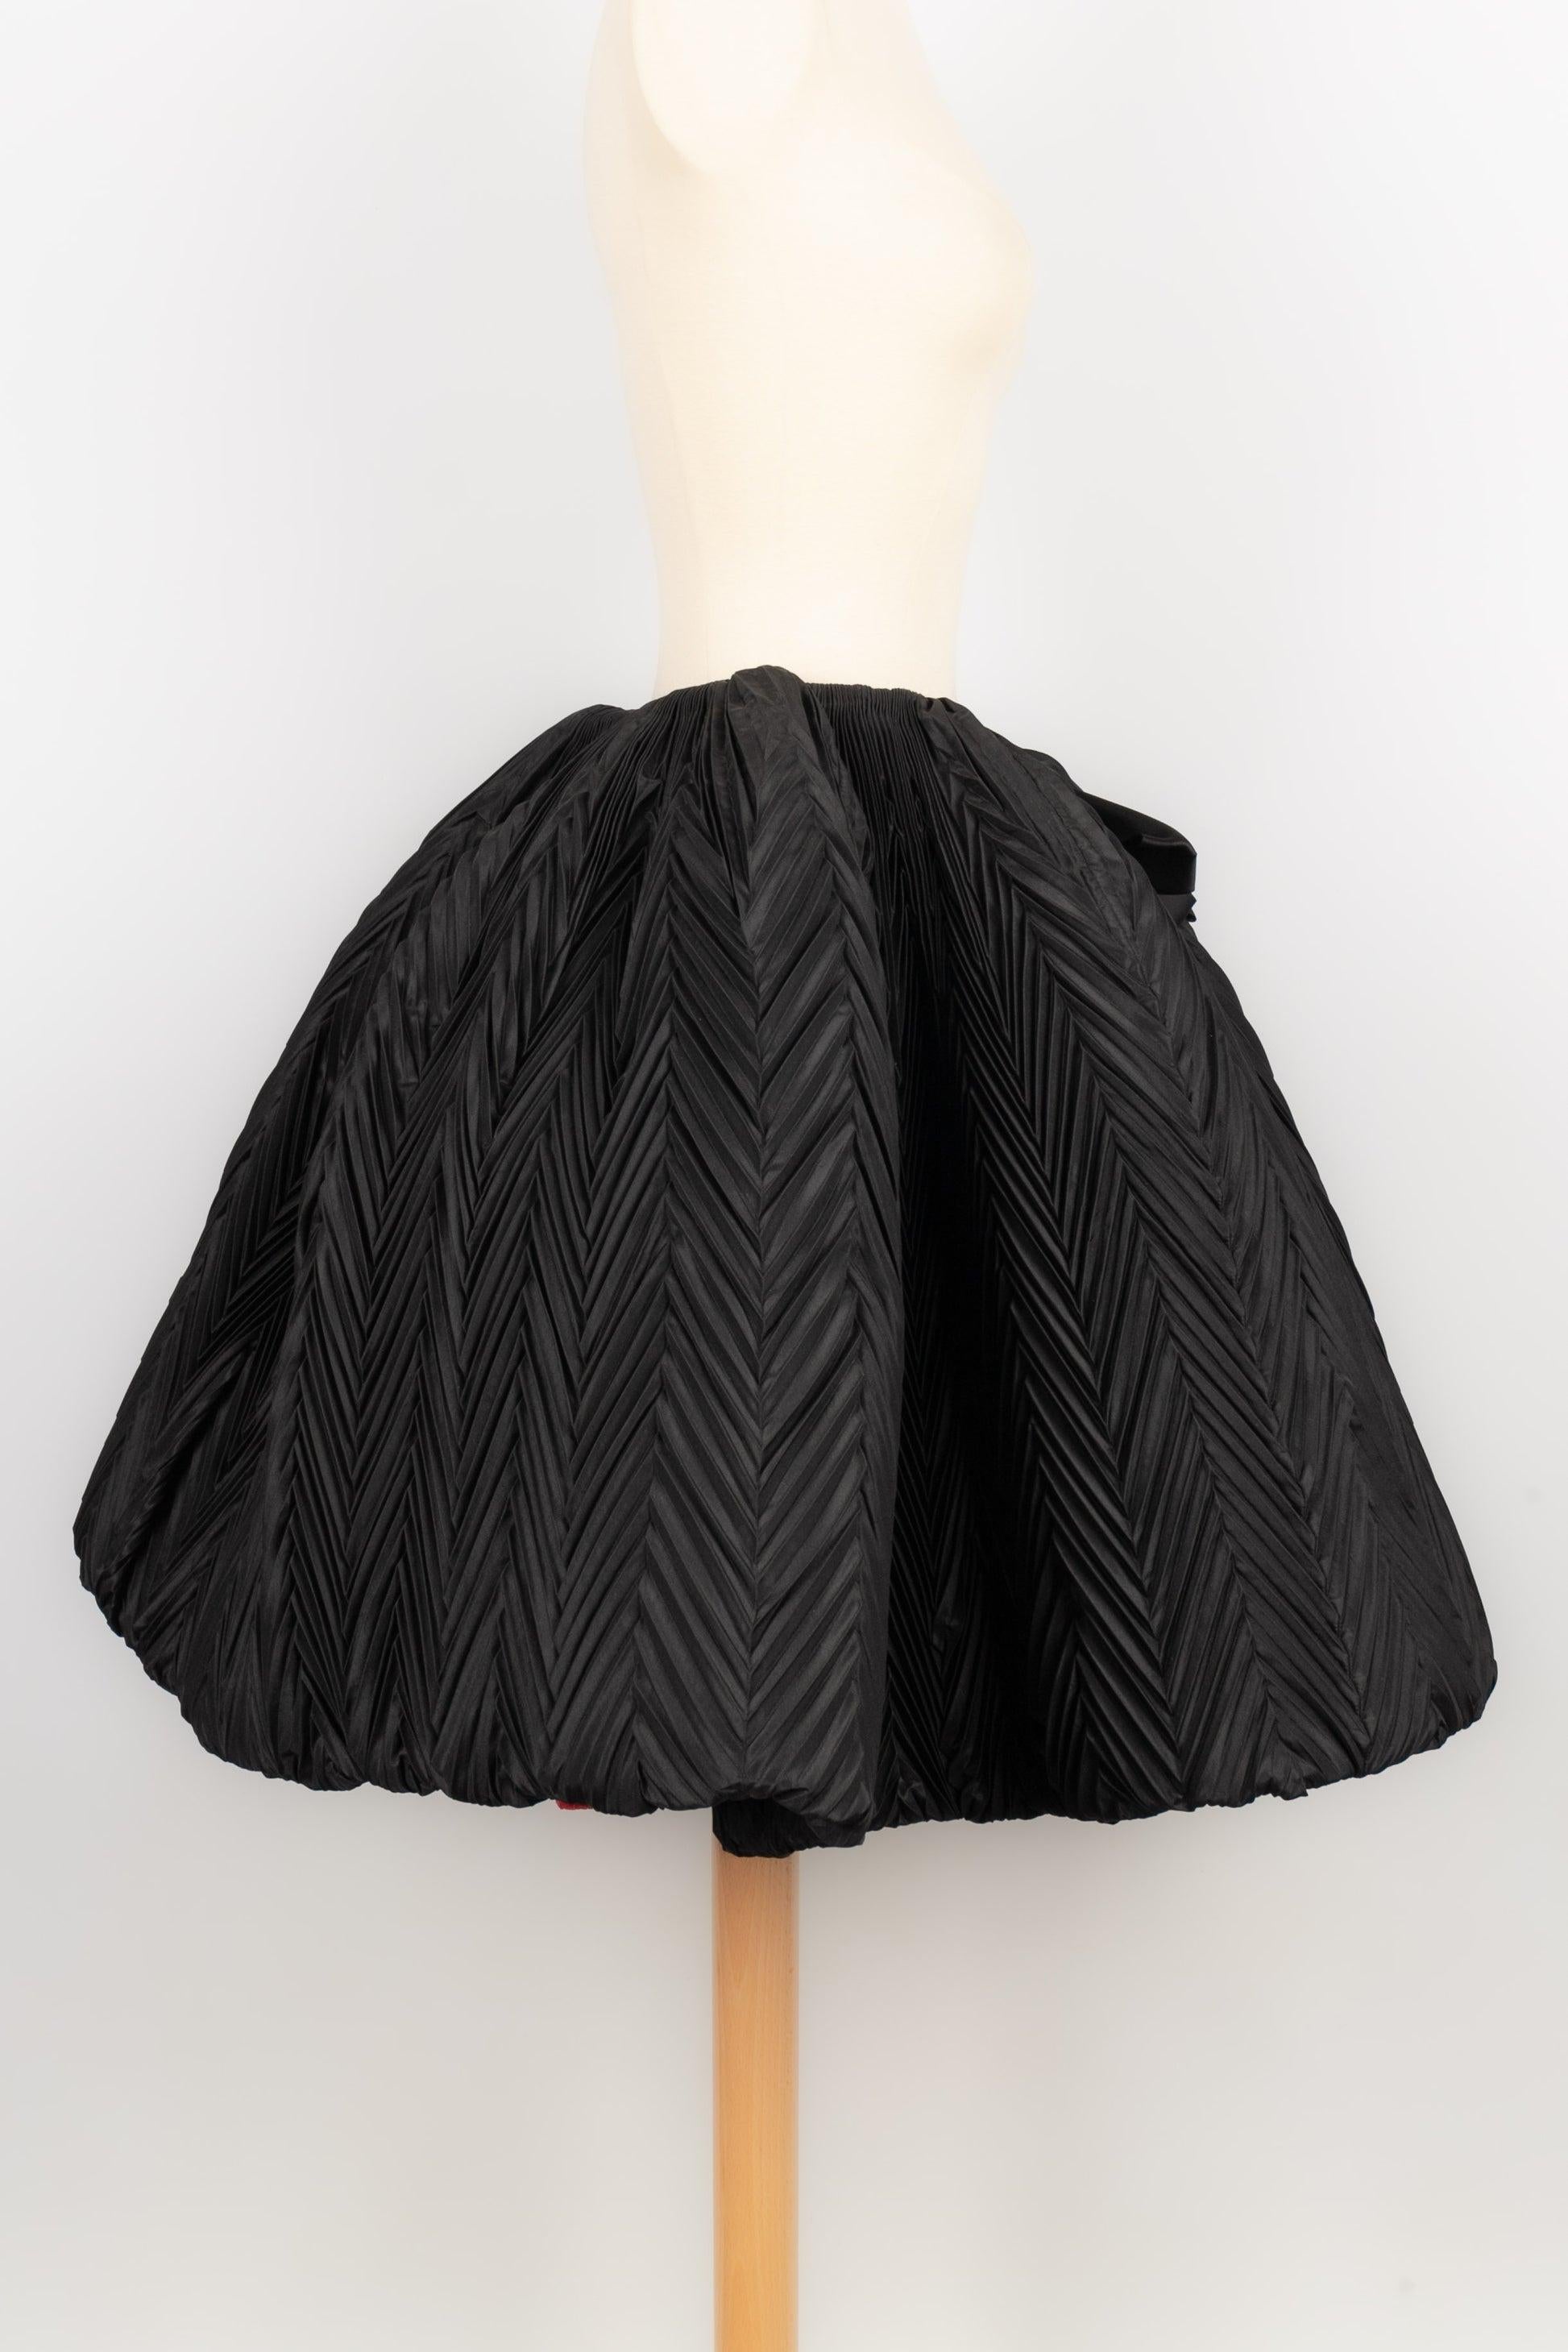 Nina Ricci -Haute Couture Kreisrock aus schwarzem Taft mit geometrischen Falten und einer eindrucksvollen Schleife in der Mitte. Keine Größenangabe, es passt eine 36FR.

Zusätzliche Informationen:
Zustand: Sehr guter Zustand
Abmessungen: Taille: 30